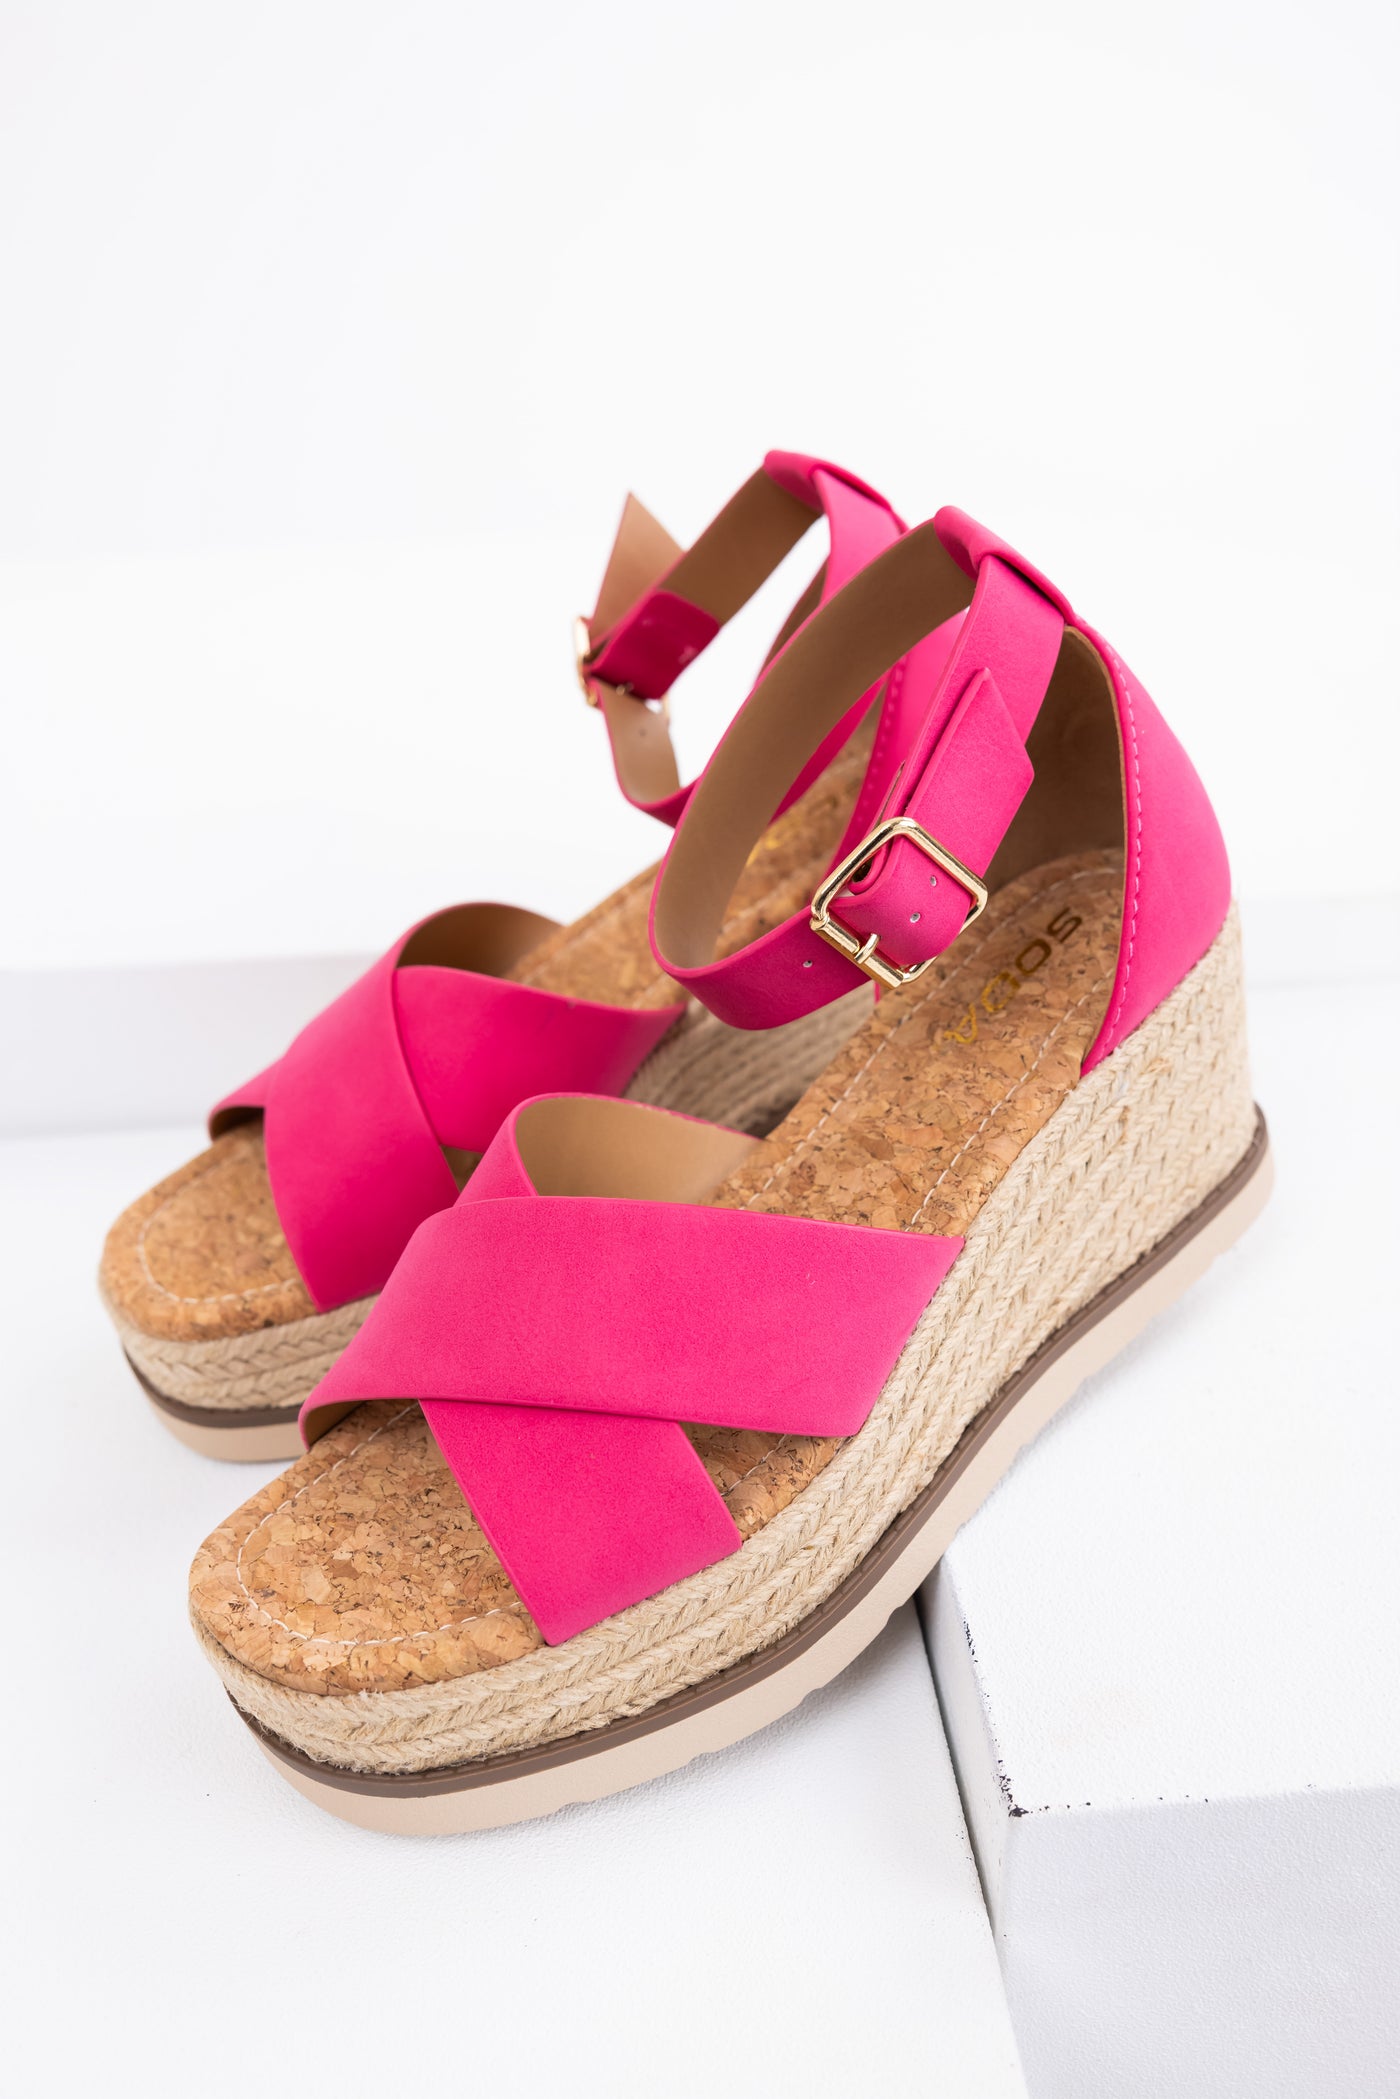 Hot Pink Cross Strap Espadrille Platform Sandals